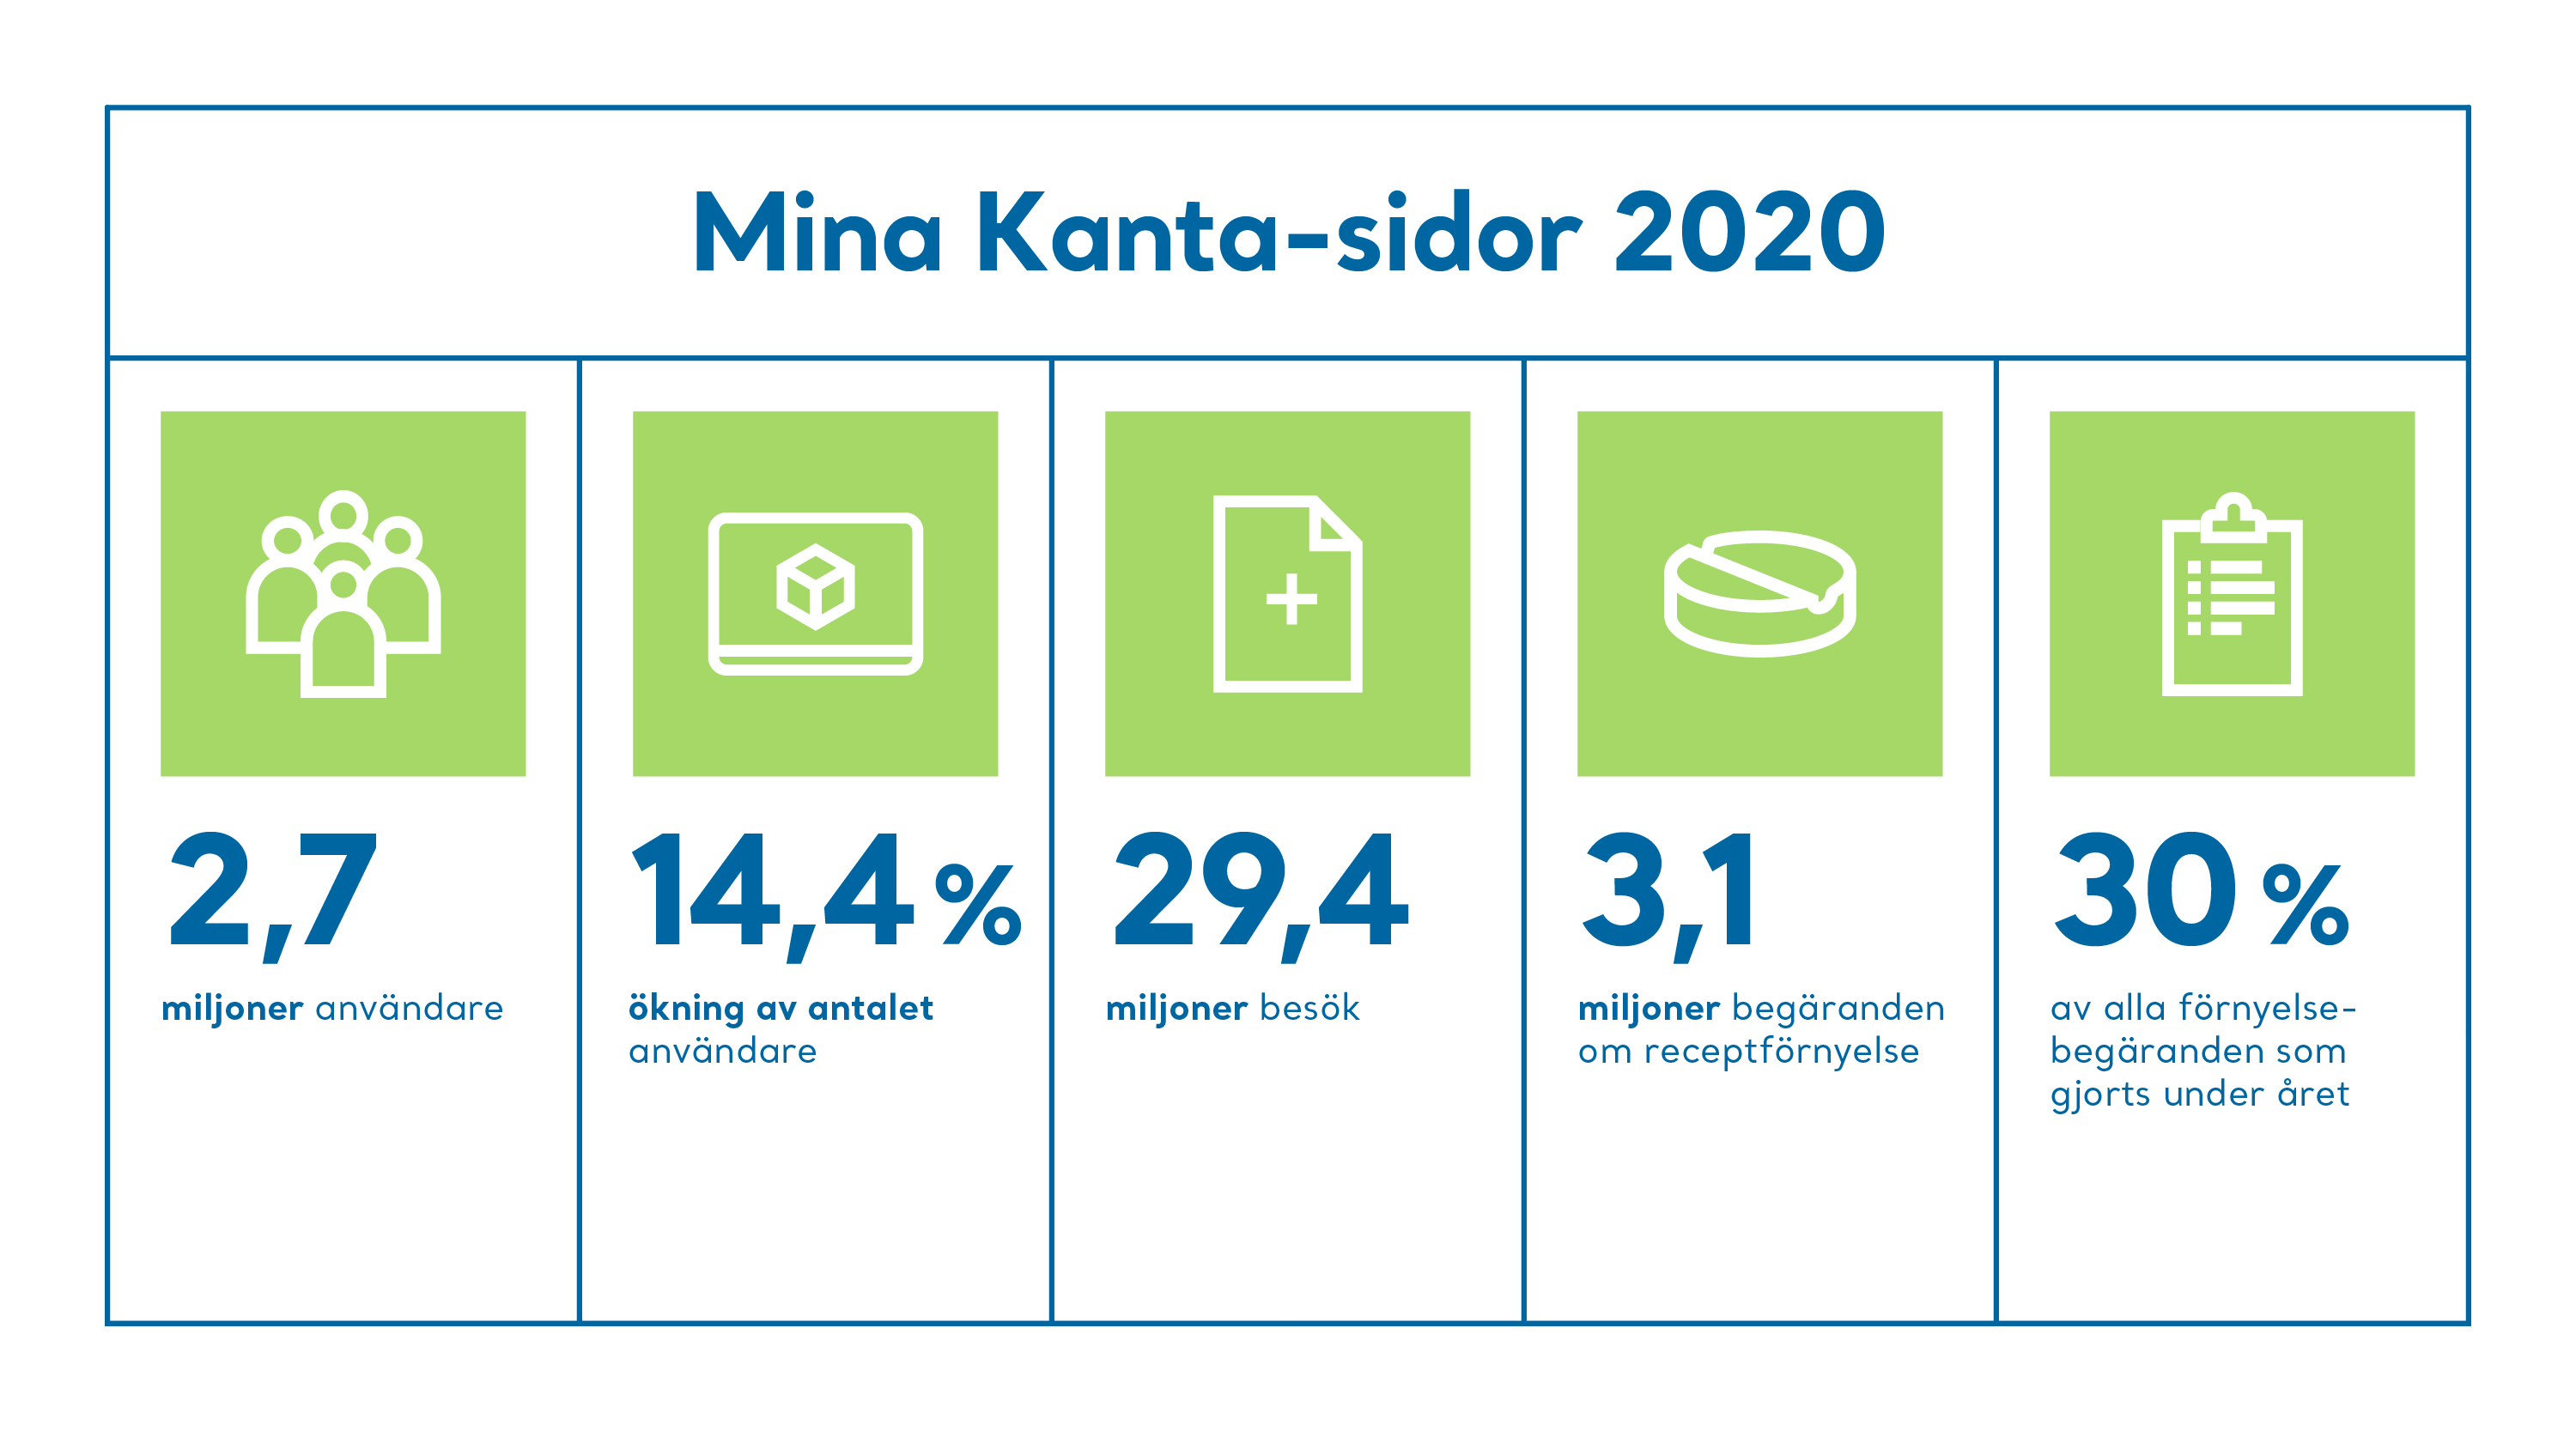 År 2020 hade Mina Kanta-sidor 2,7 miljoner användare. Användarna ökade med 14,4 % från föregående år.  År 2020 gjordes 29,4 miljoner besök på Mina Kanta-sidor. År 2020 gjordes 3,1 miljoner begäranden om receptförnyelse på Mina Kanta-sidor. Det här var 30 % av alla begäranden om receptförnyelse under året. 